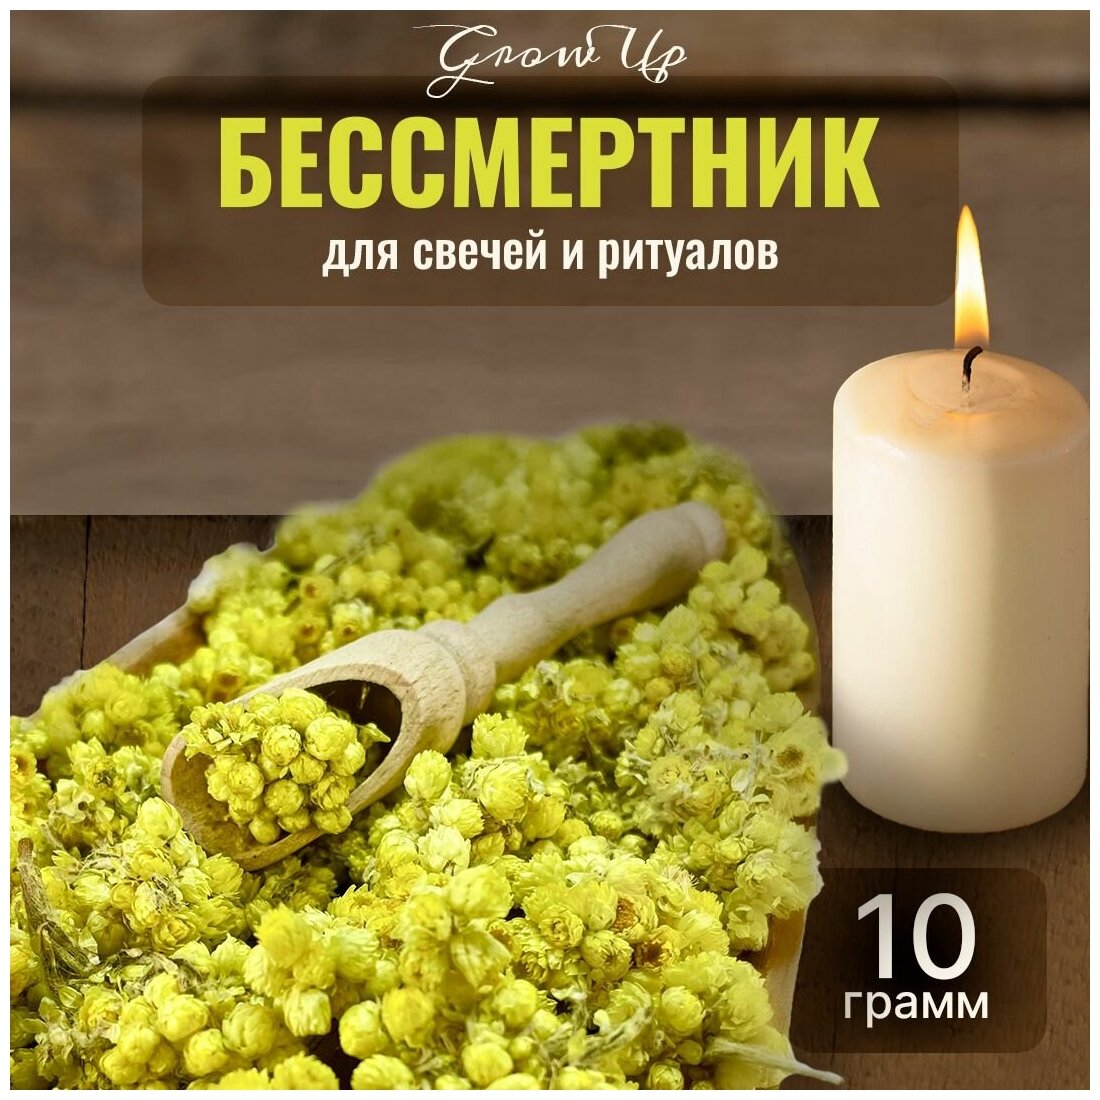 Сухая трава Бессмертник (цветы) для свечей и ритуалов, 10 гр